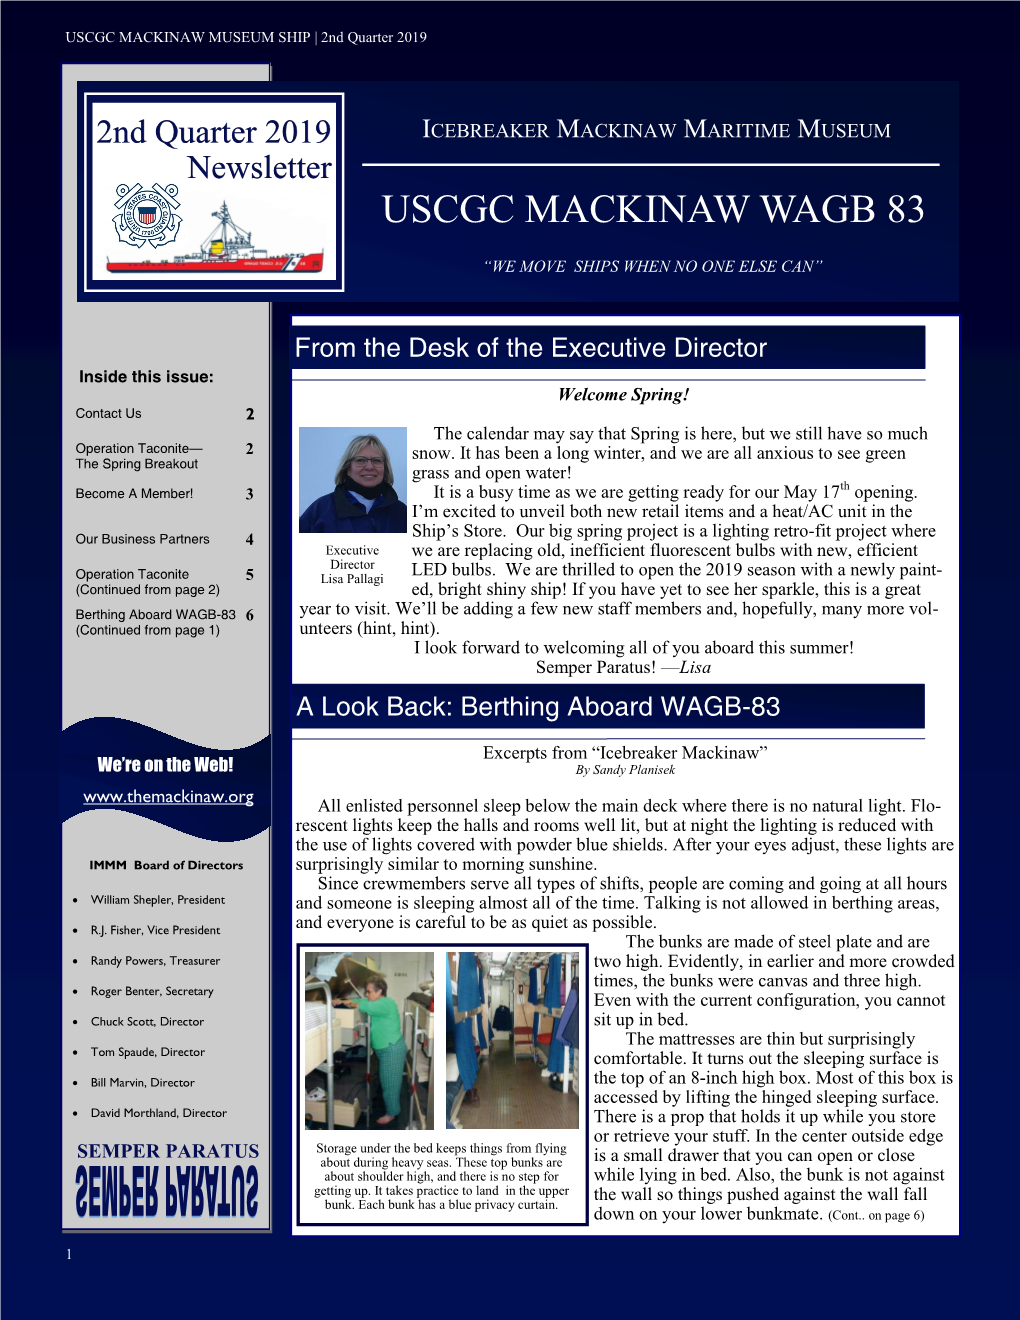 Uscgc Mackinaw Wagb 83